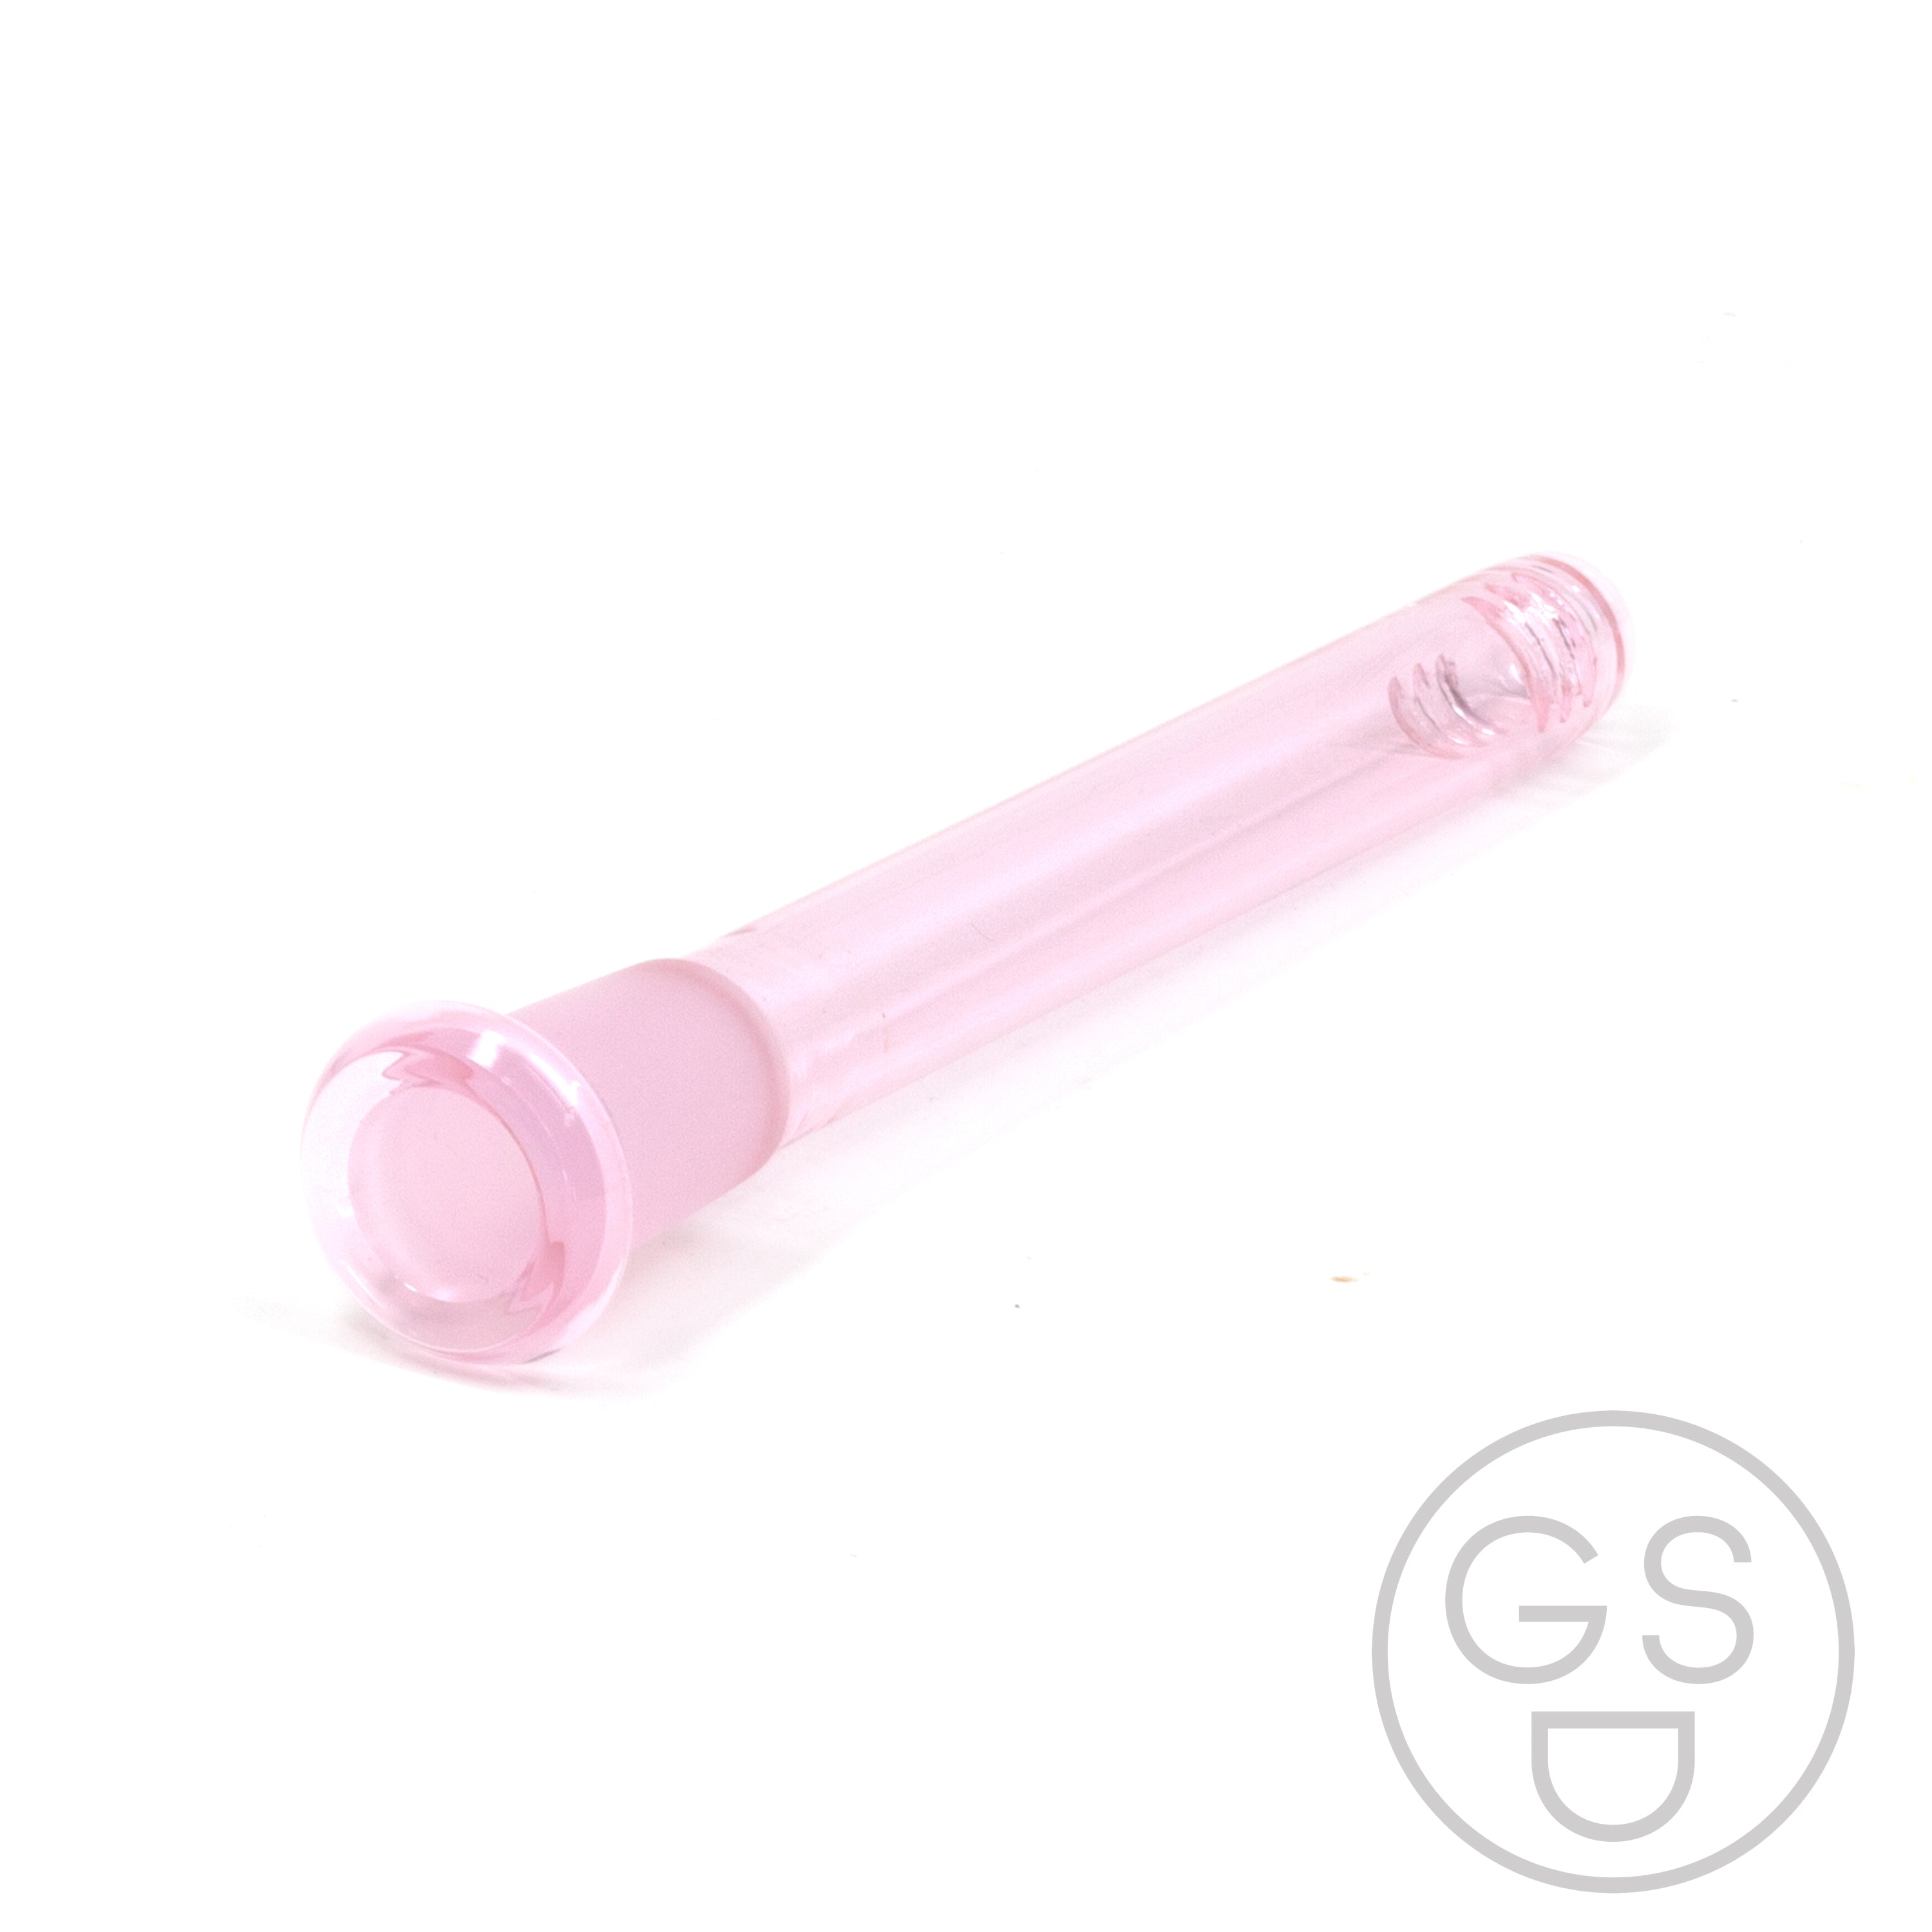 Prism Modular Waterpipe Downstem - Transparent / Pink Lemonade